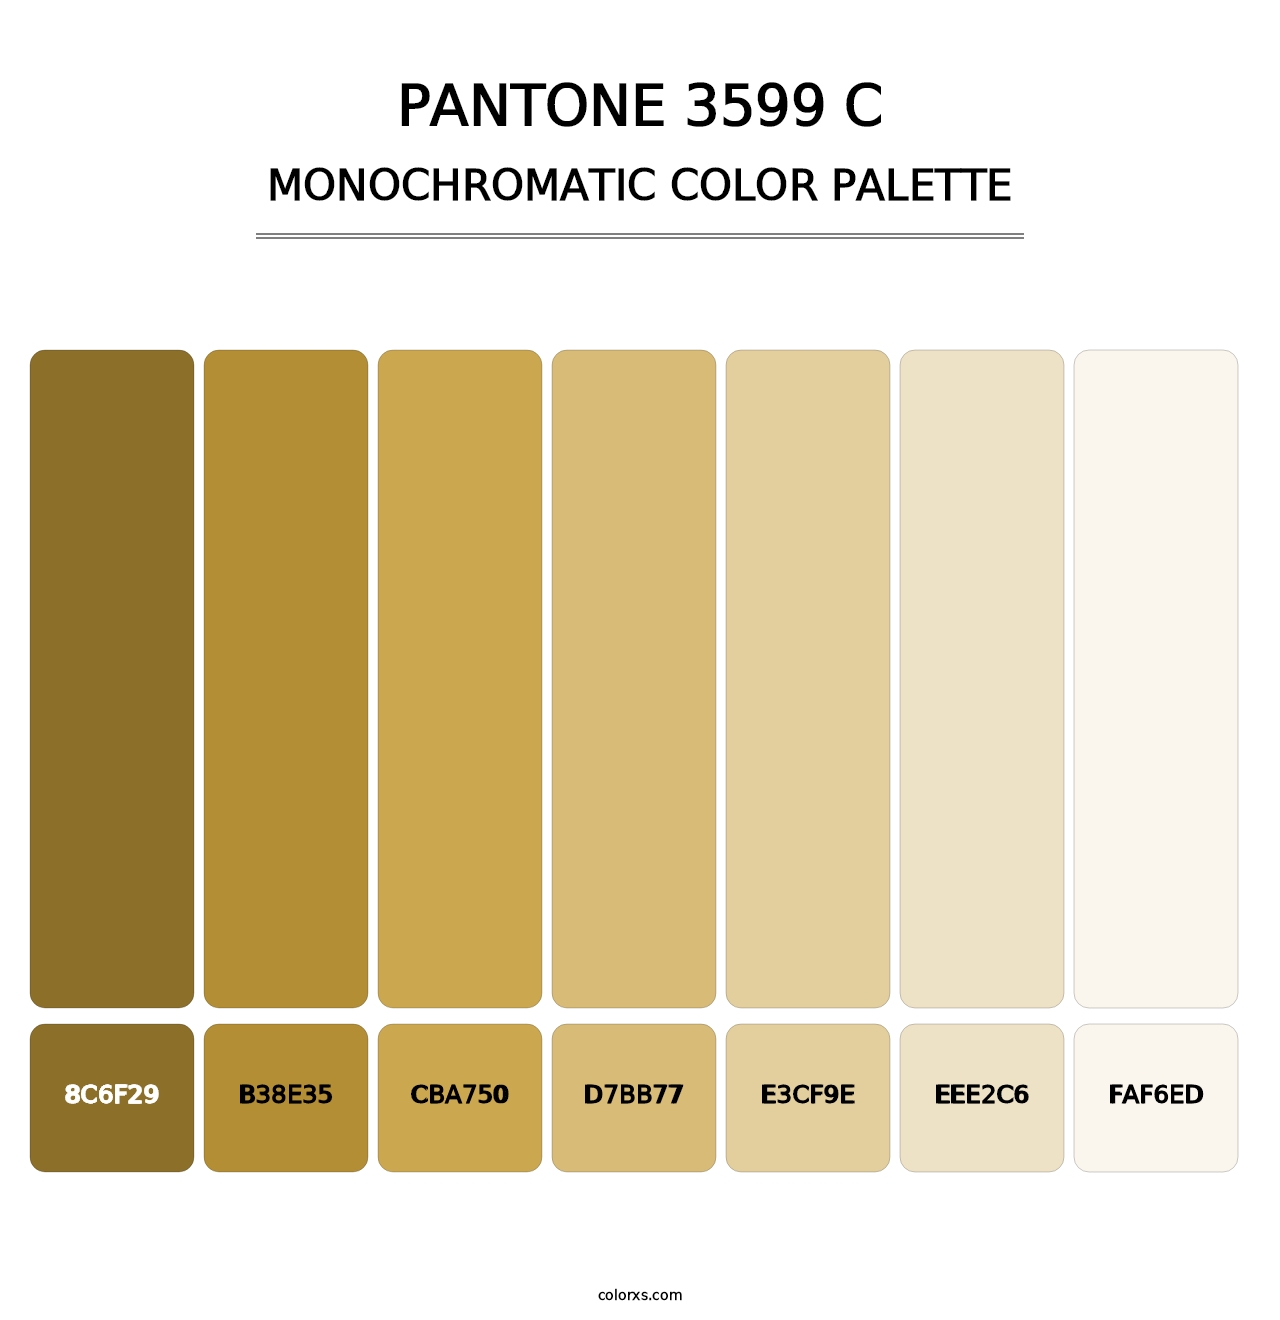 PANTONE 3599 C - Monochromatic Color Palette